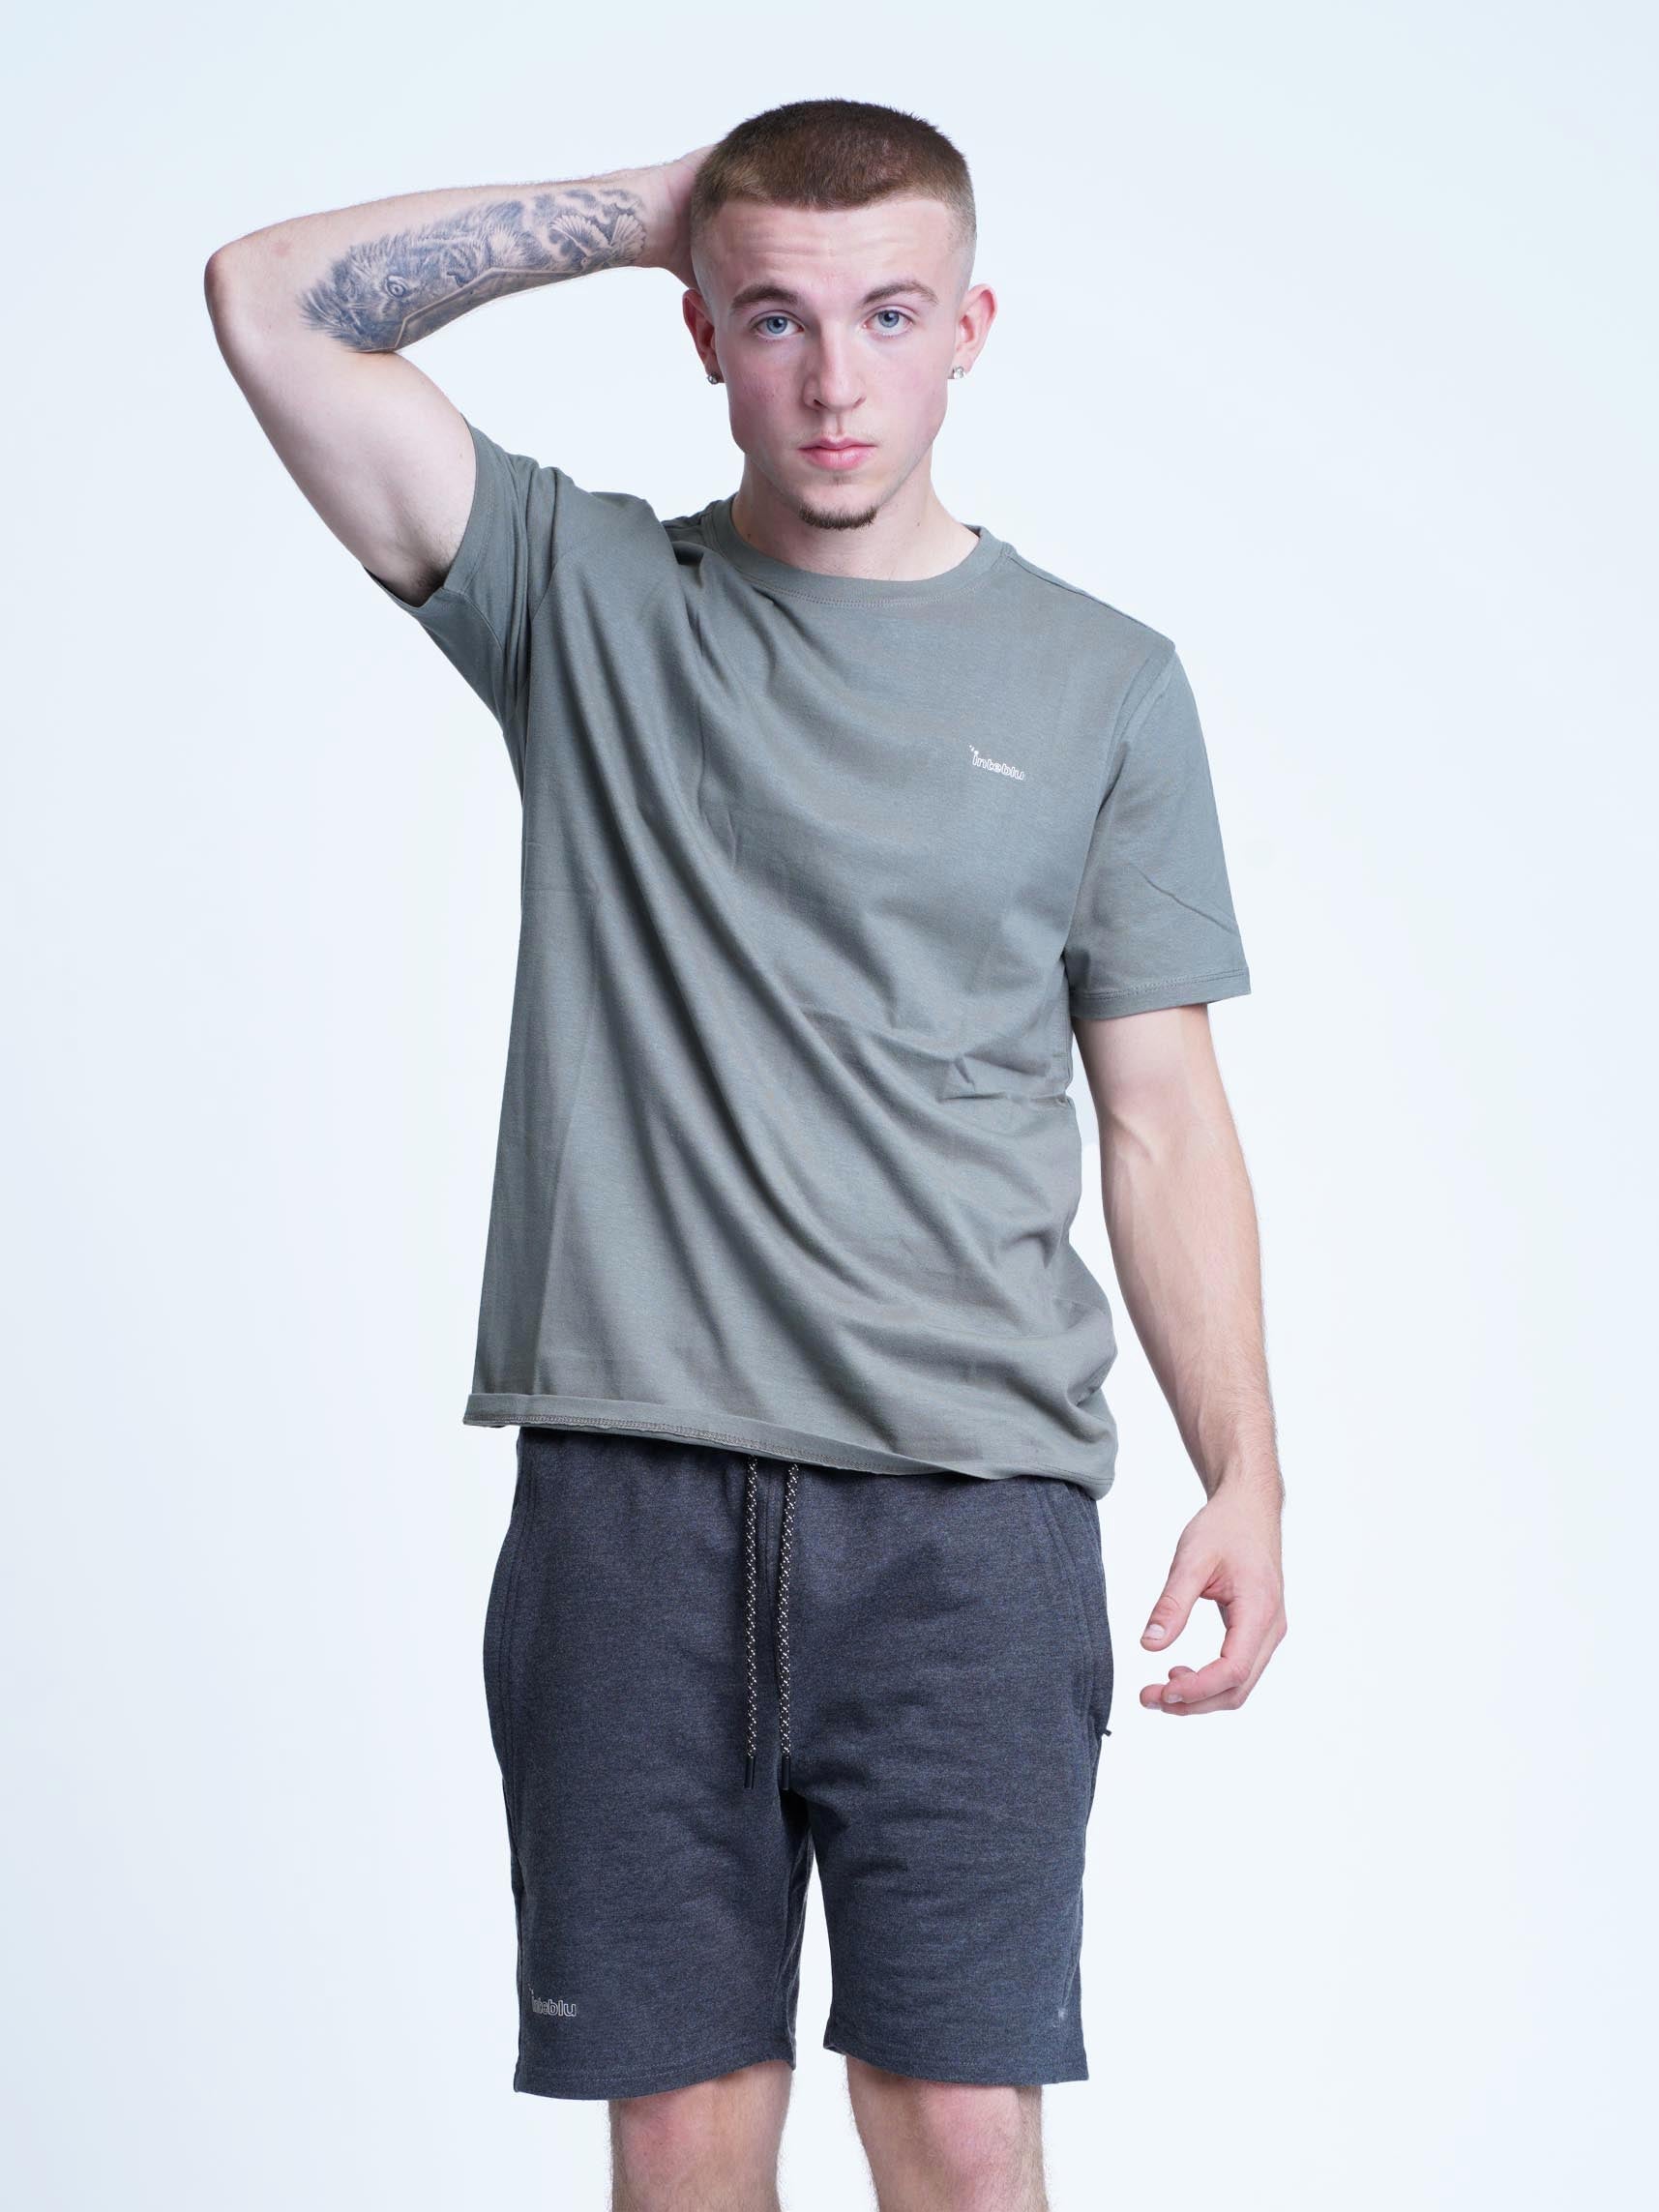 Men's Slim-Fit Cotton T-Shirt - inteblu